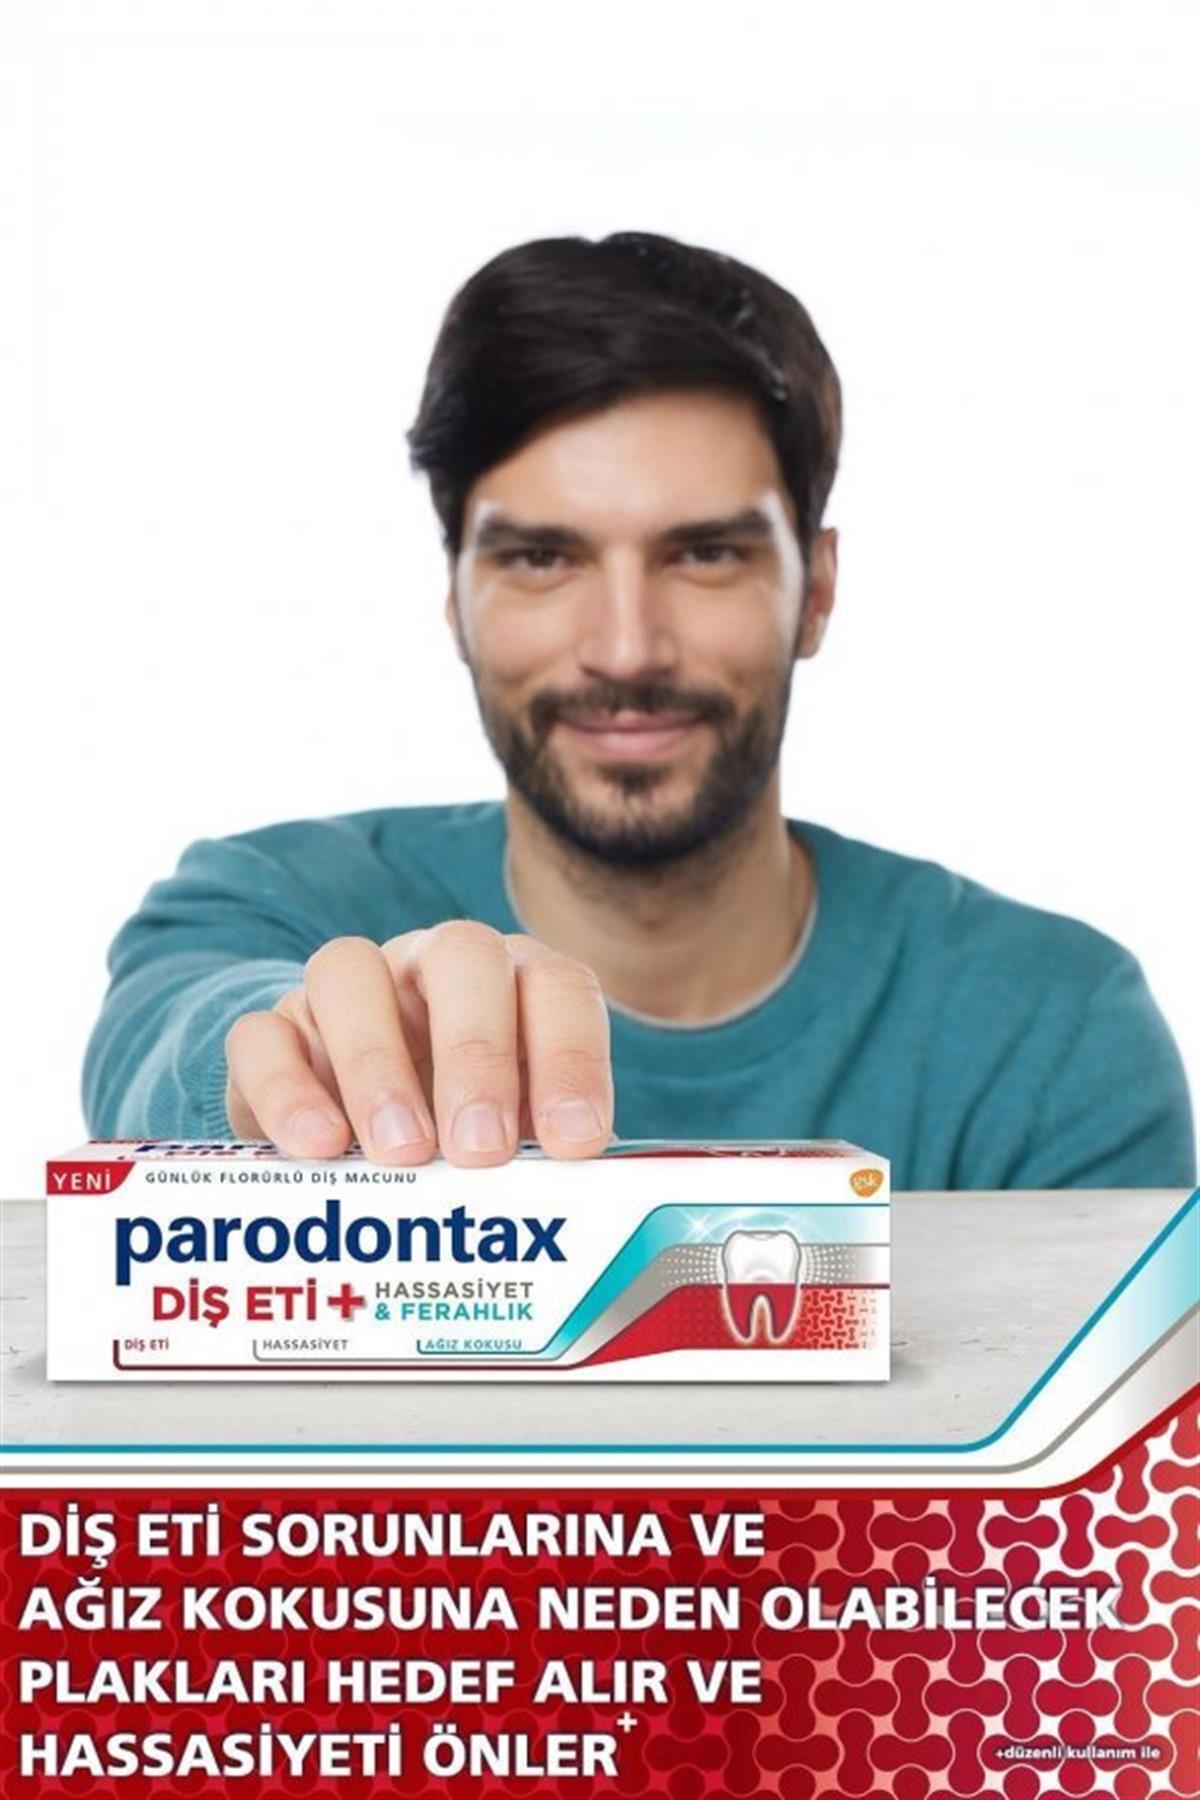 PARODONTAX Diş Macunu Diş Eti + Hassasiyet + Ferahlık + Beyazlatıcı 75ml |  Farma Ucuz